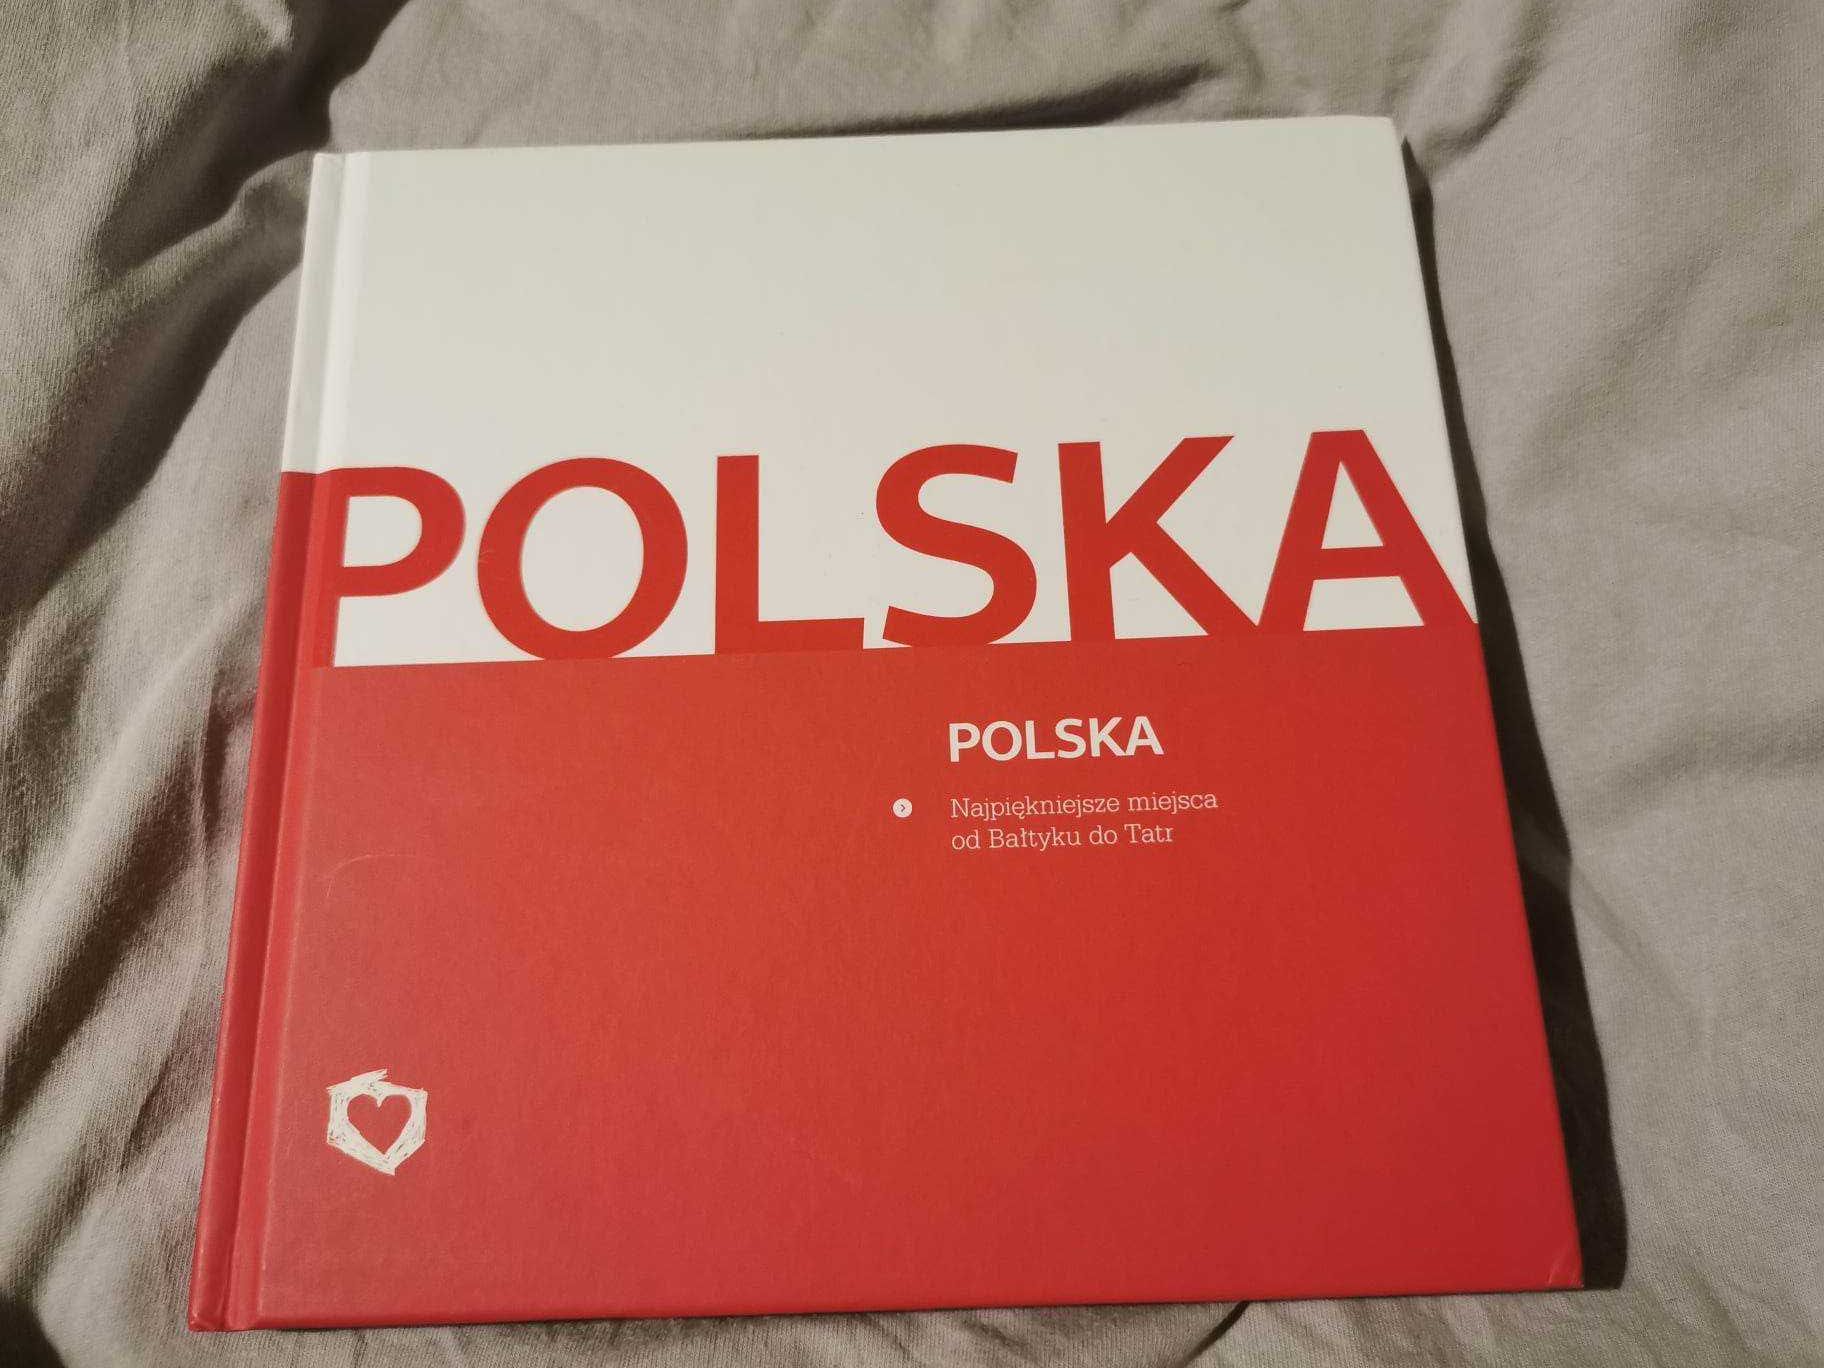 Nowy album "POLSKA. Najpiękniejsze miejsca od Bałtyku do Tatr"